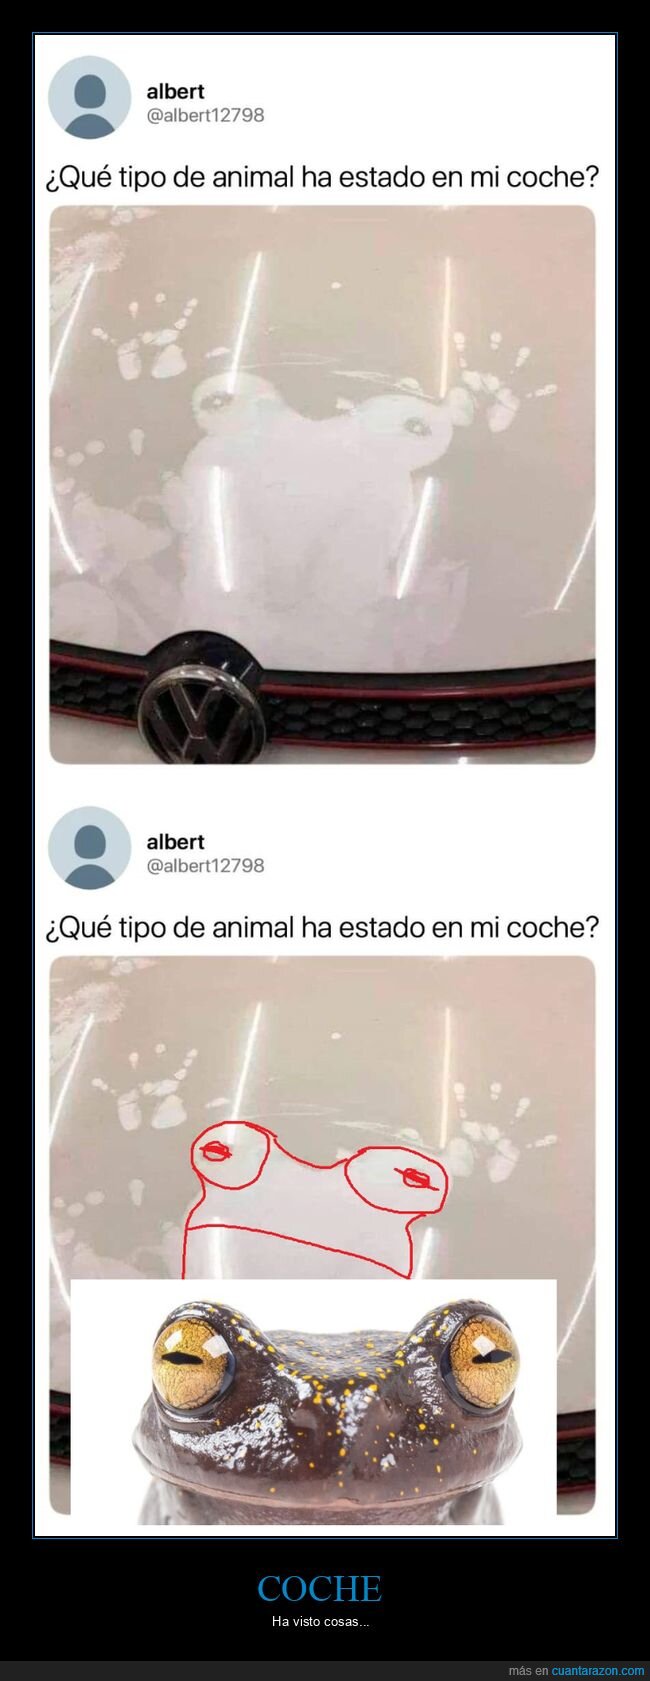 coche,animal,rana